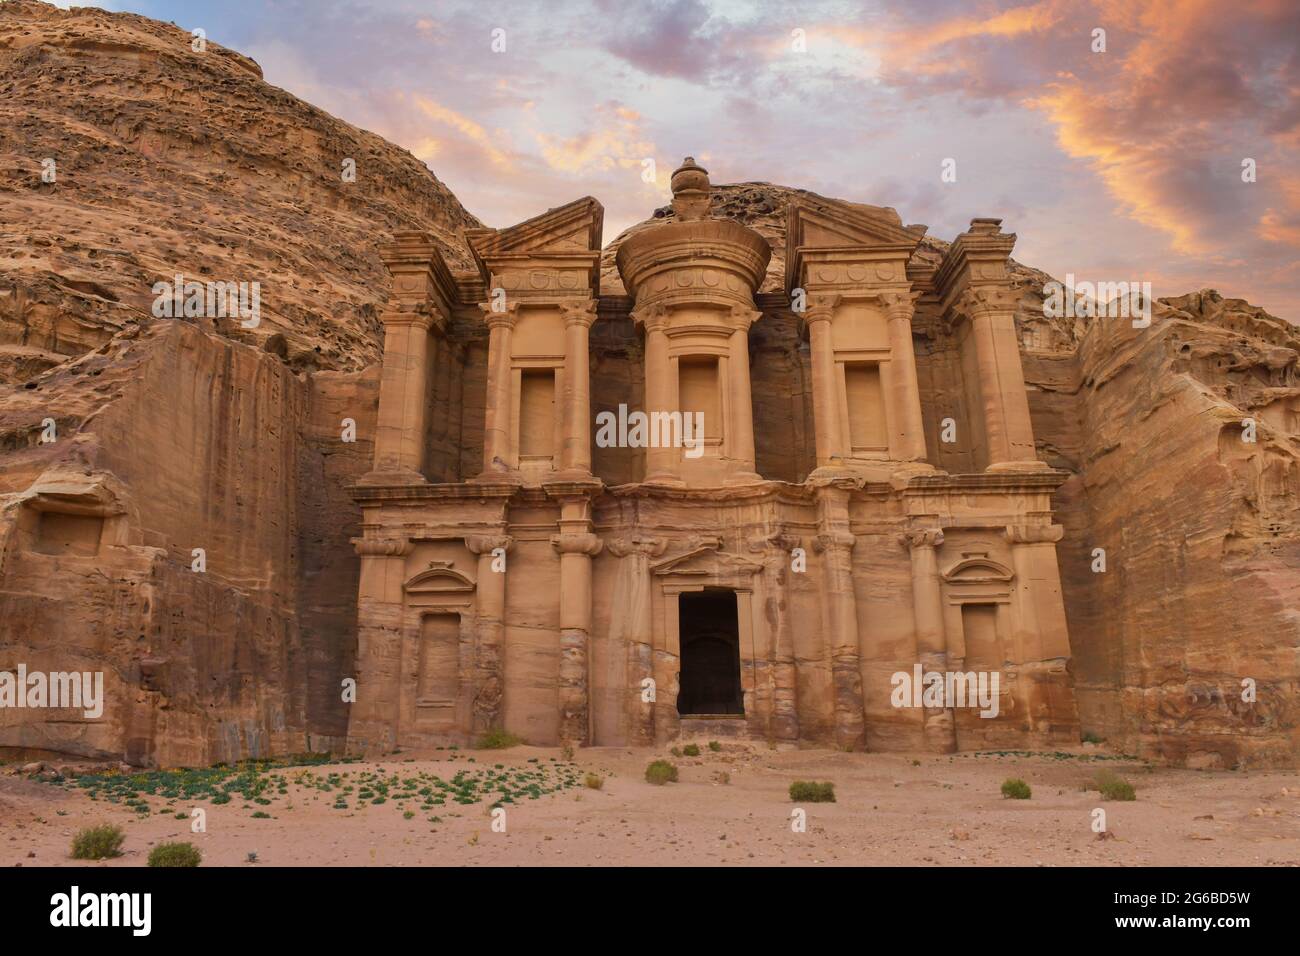 The Treasury, Petra, Jordan Stock Photo